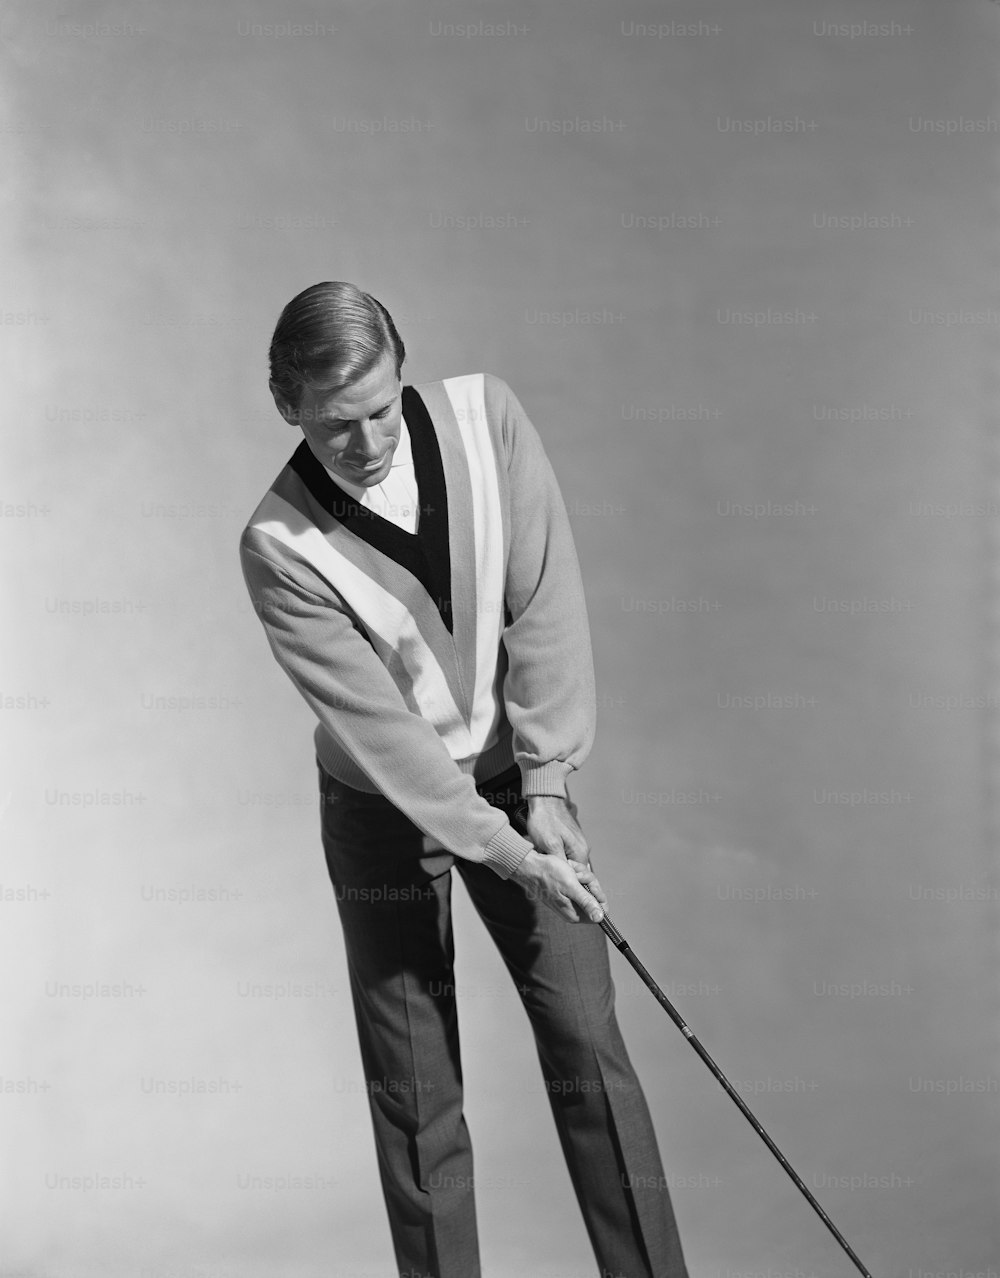 Un uomo che tiene una mazza da golf nella mano destra